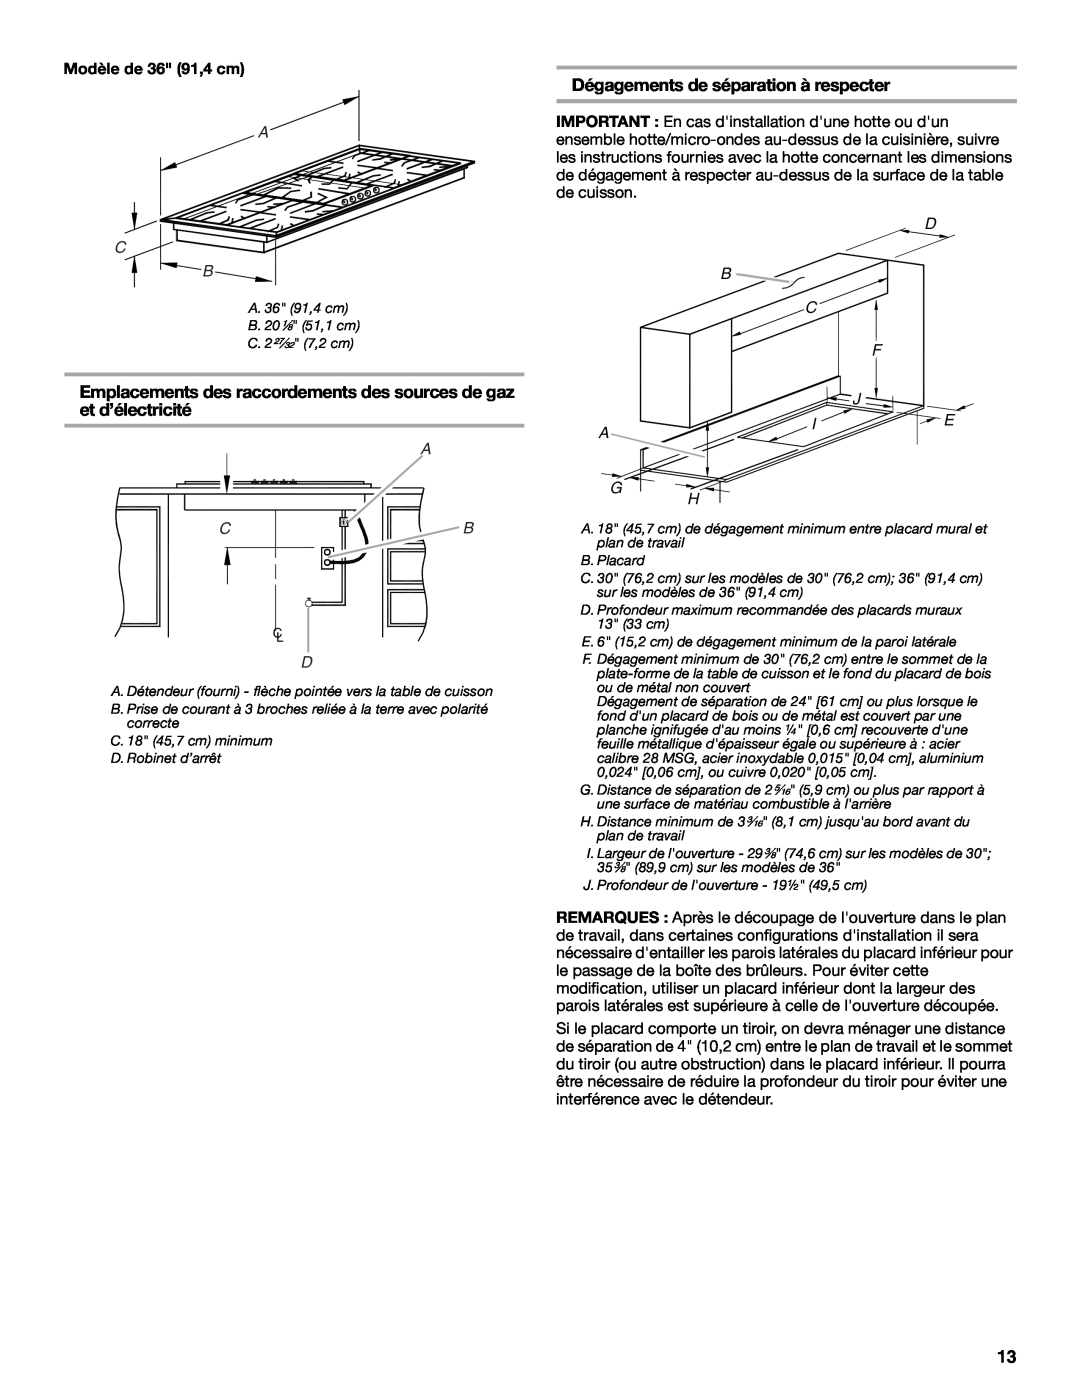 Whirlpool 9761893B installation instructions Dégagements de séparation à respecter, Modèle de 36 91,4 cm, A G H, F J I E 